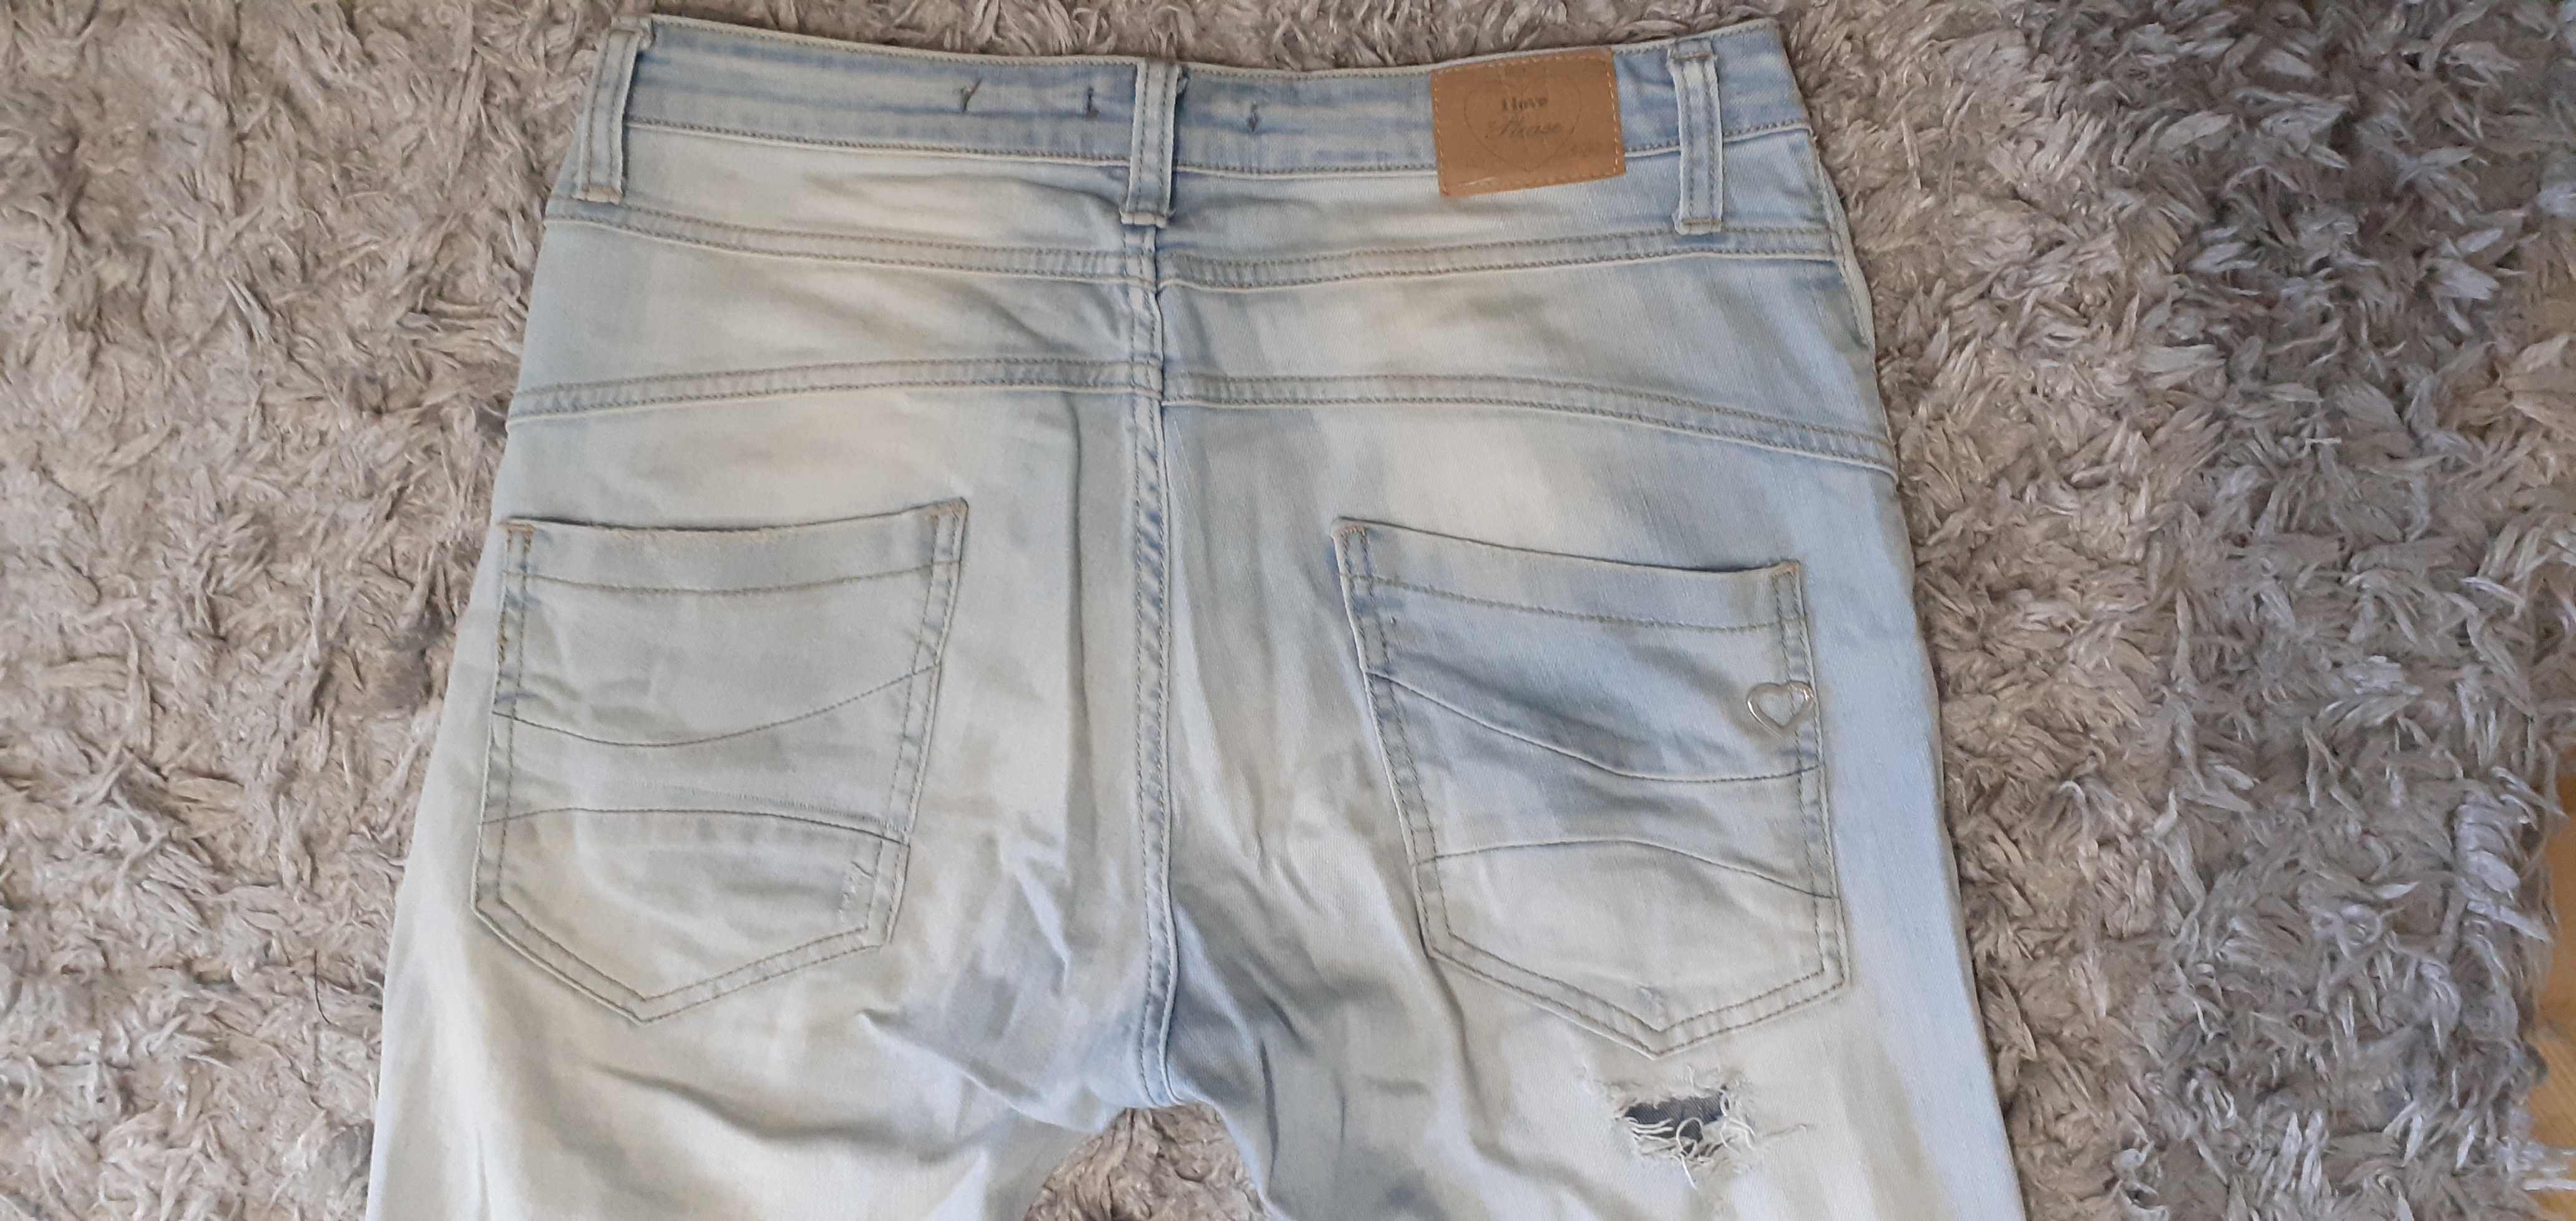 Spodnie jeans / dżinsy S